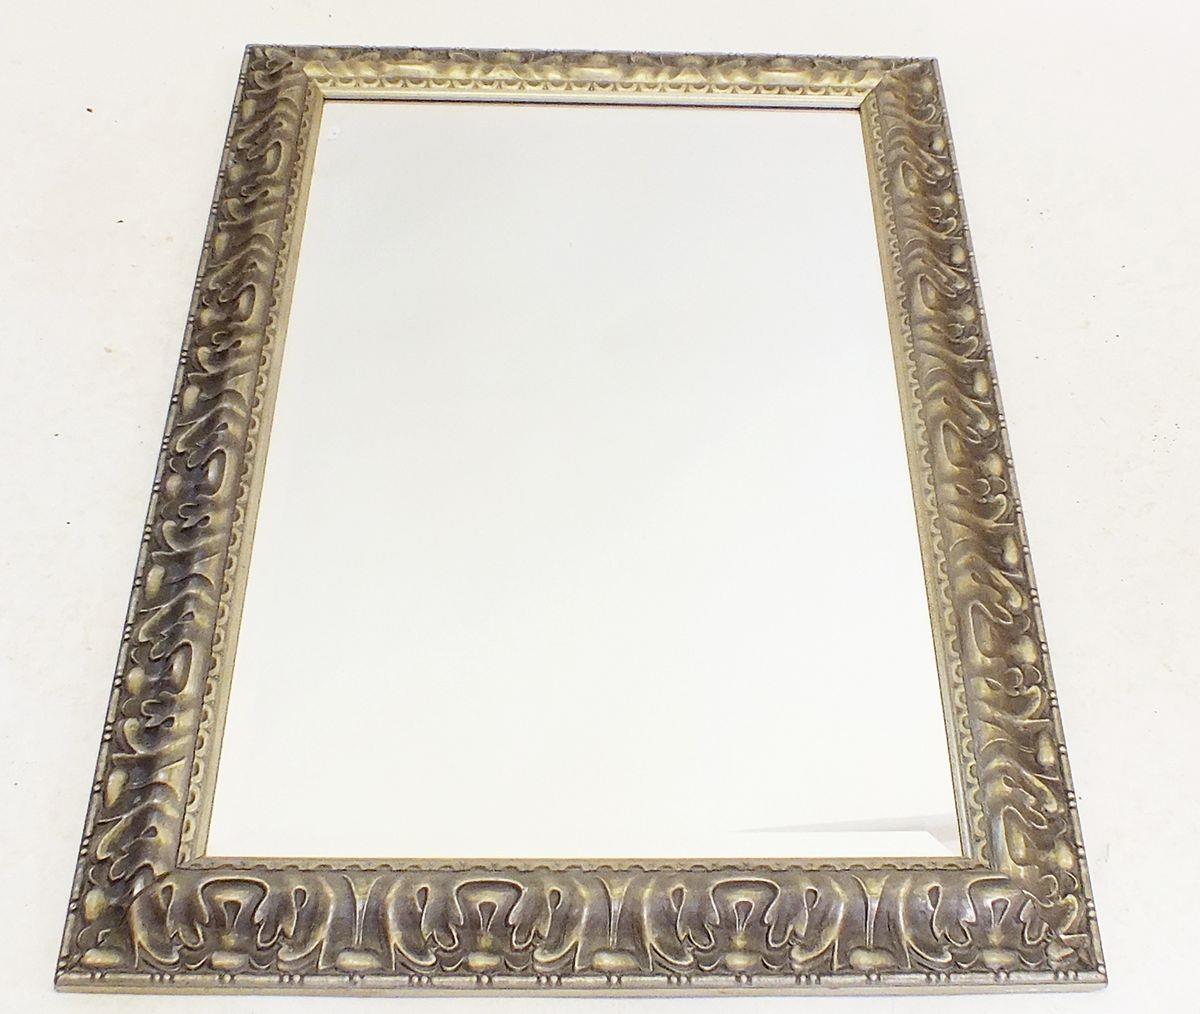 A silvered framed mirror, 90 x 66cm